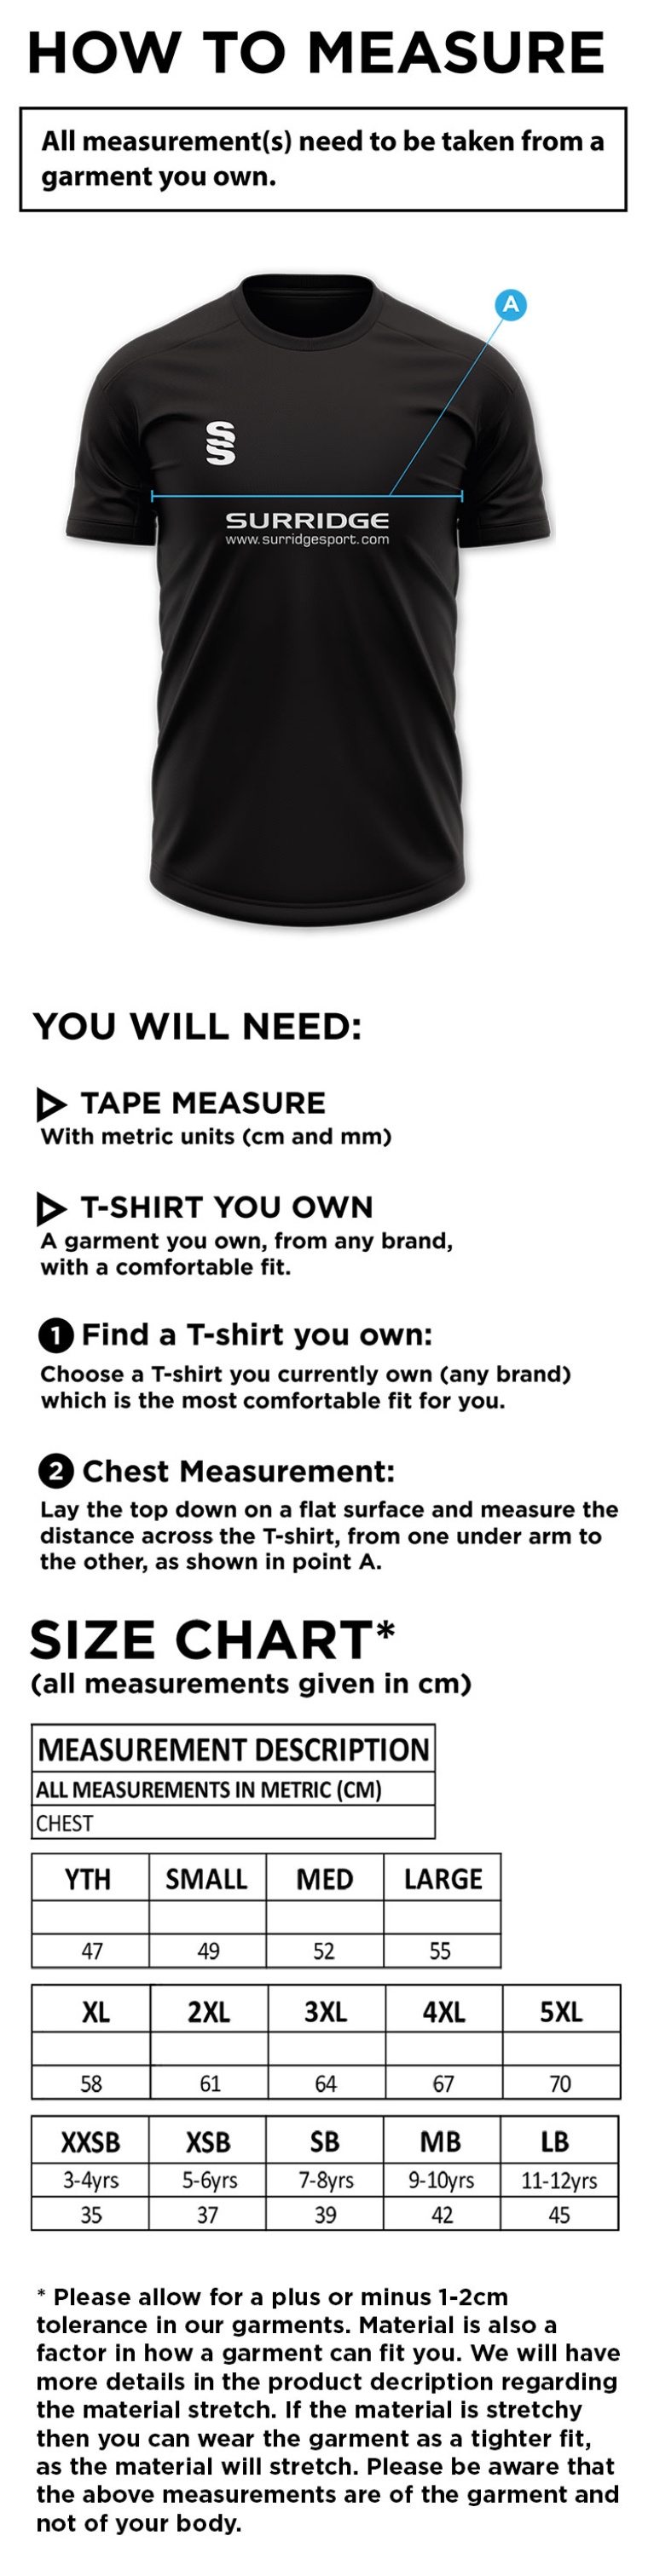 Shepley CC - Dual Training Shirt - Size Guide